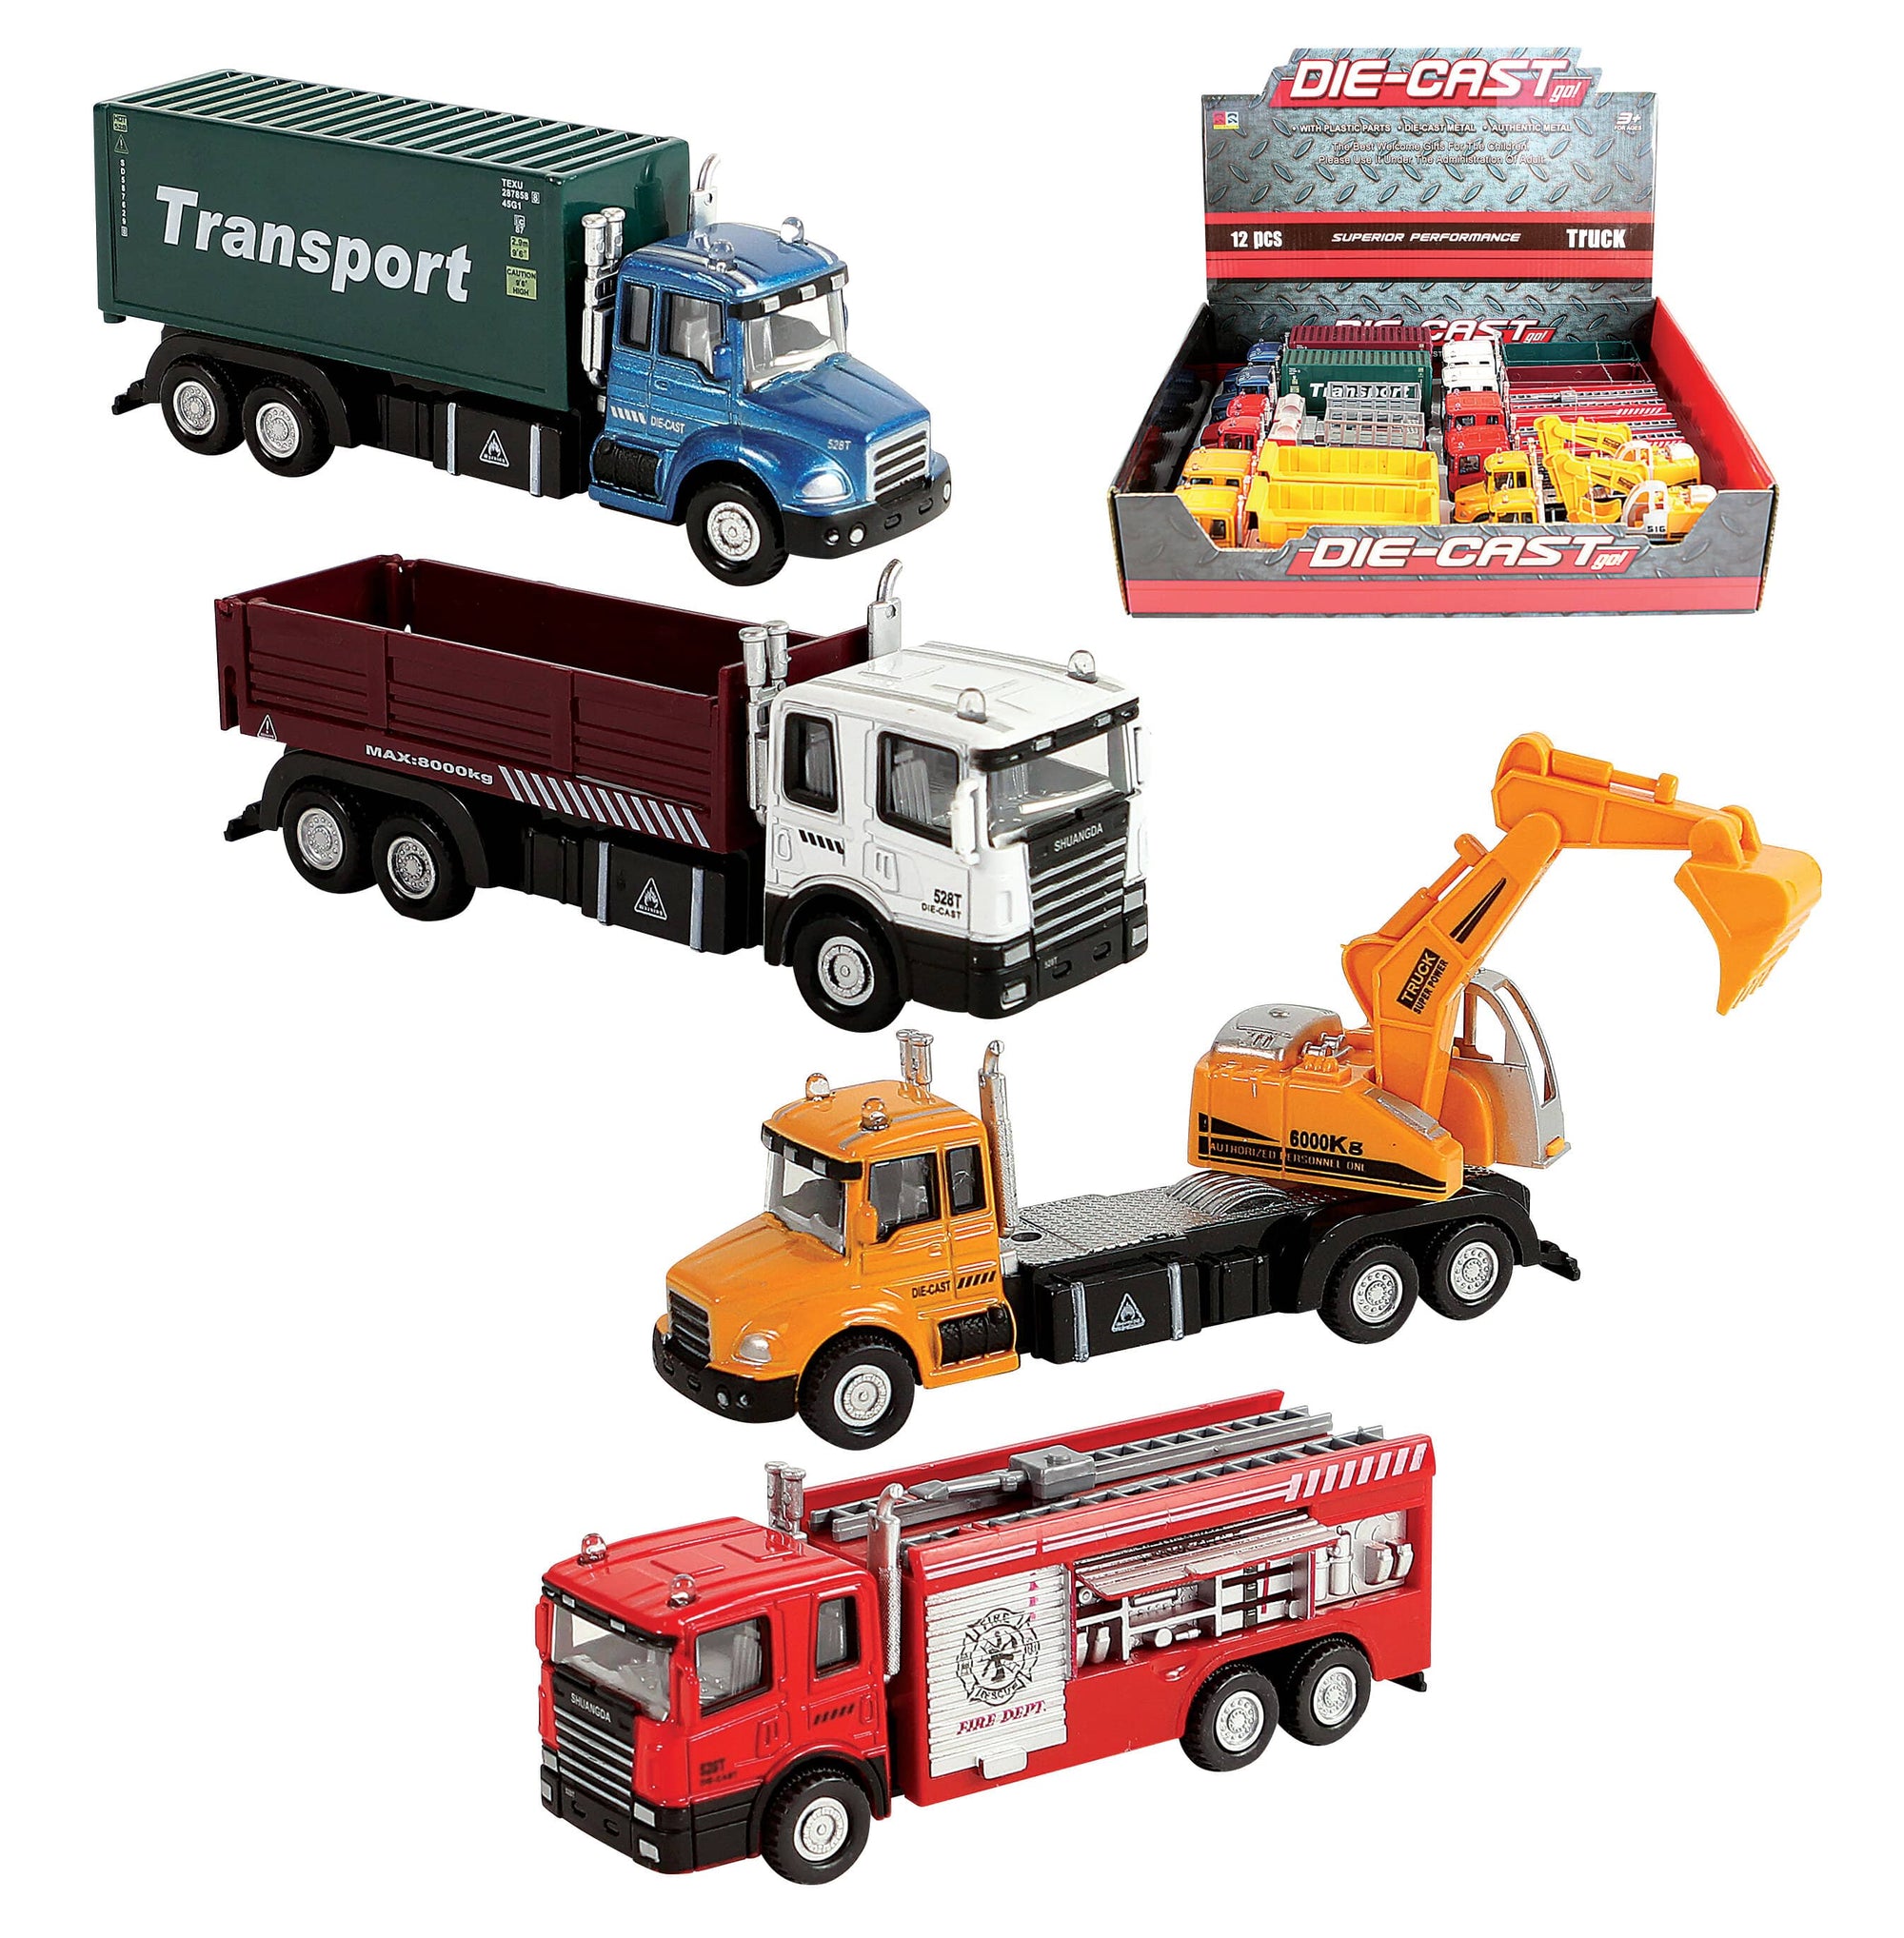 6" Die Cast Trucks Of Transportation